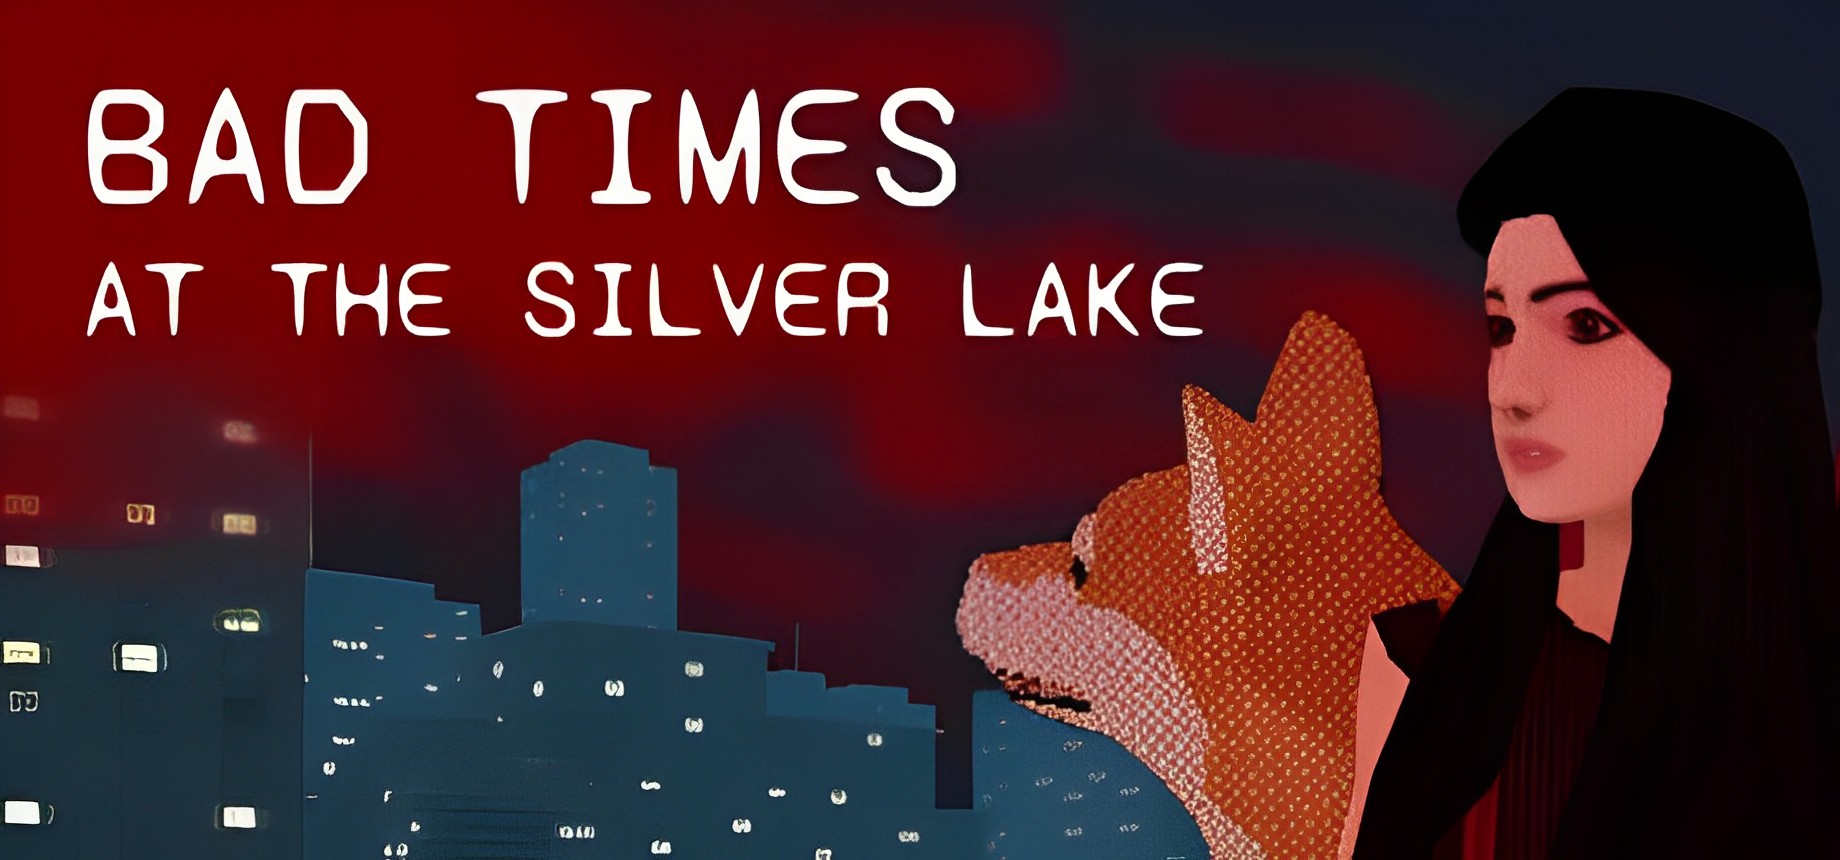 银湖的坏时光/Bad Times at the Silver Lake